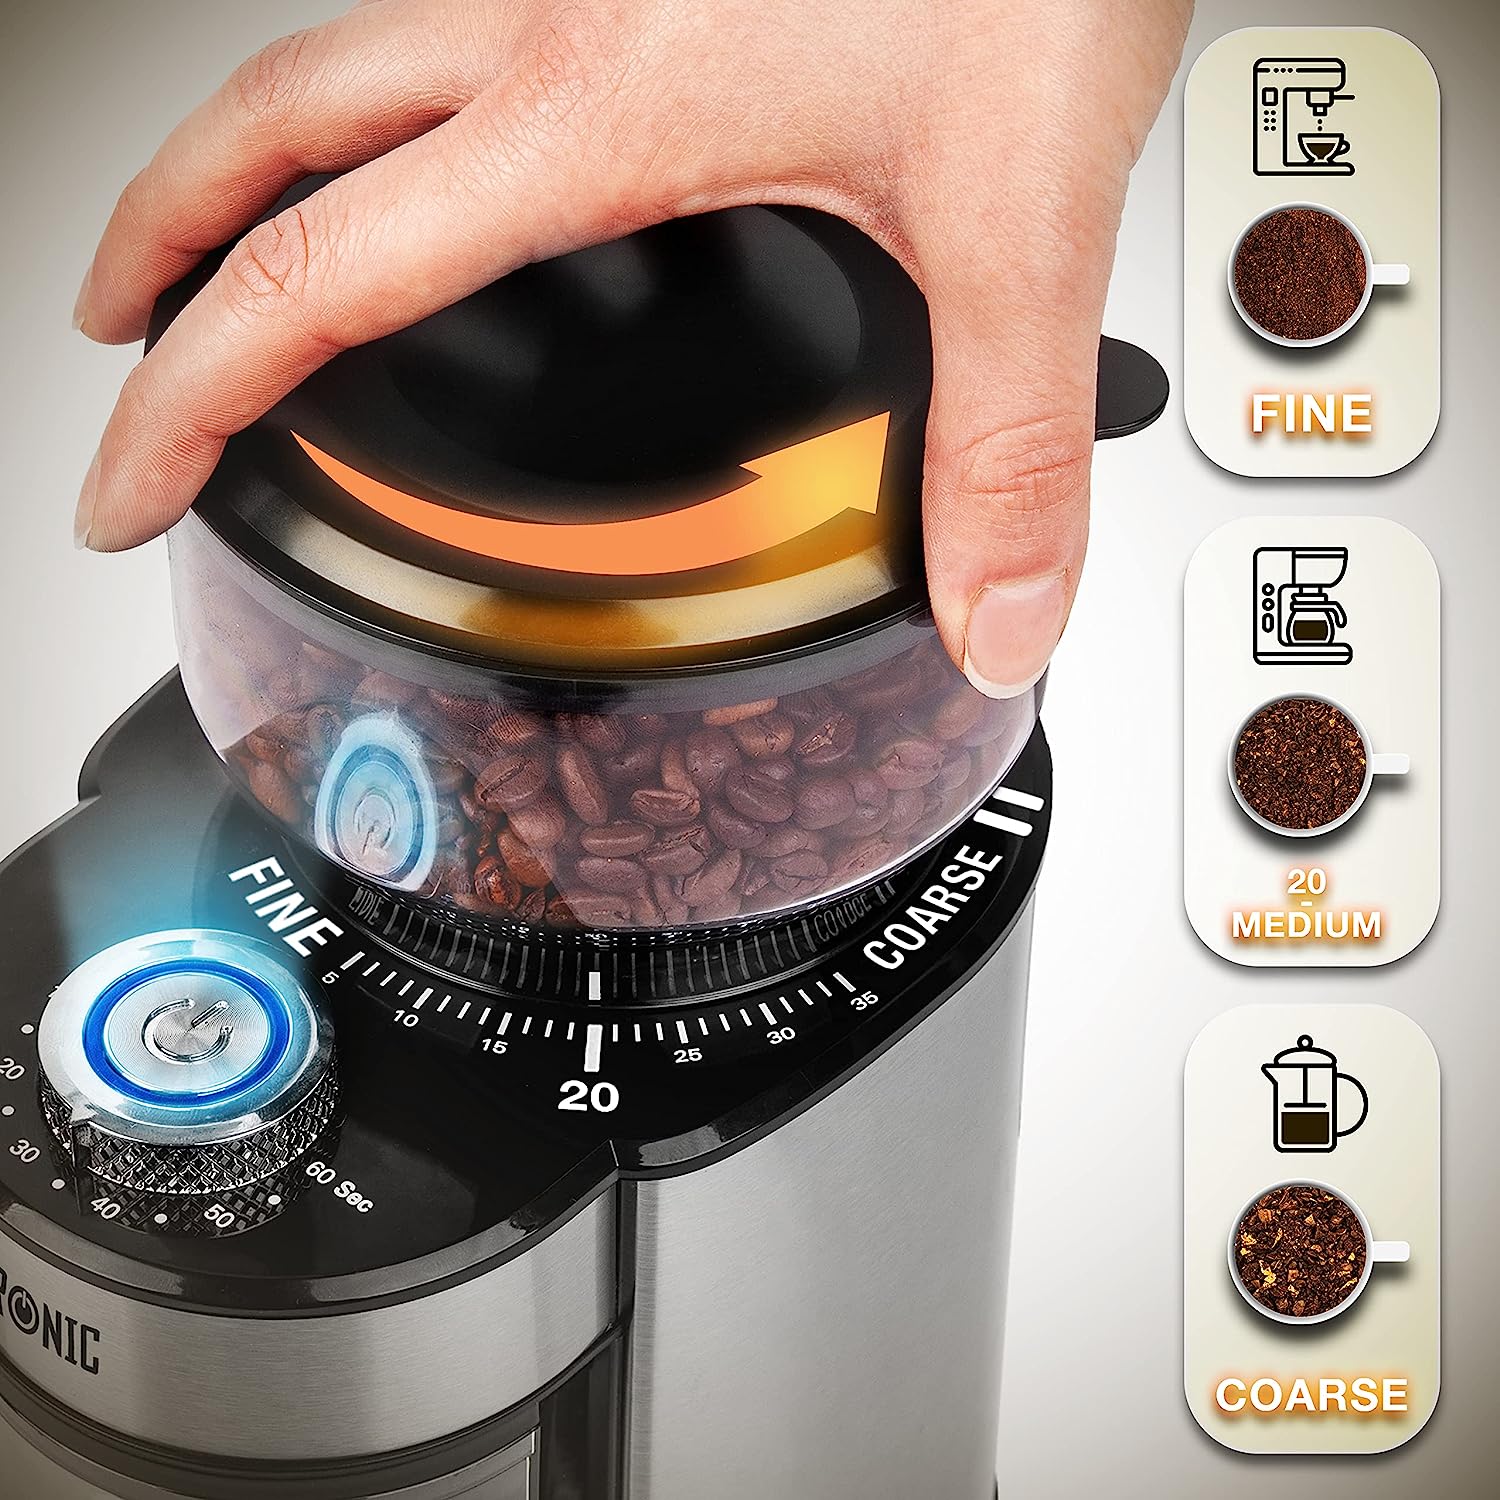 Duronic BG200 Molinillo de café eléctrico | Potencia de 200 W y 2 recipientes | 7 niveles de molido | Taza de 200 g de capacidad y recipiente de 120 g de capacidad | Cuchara incluida